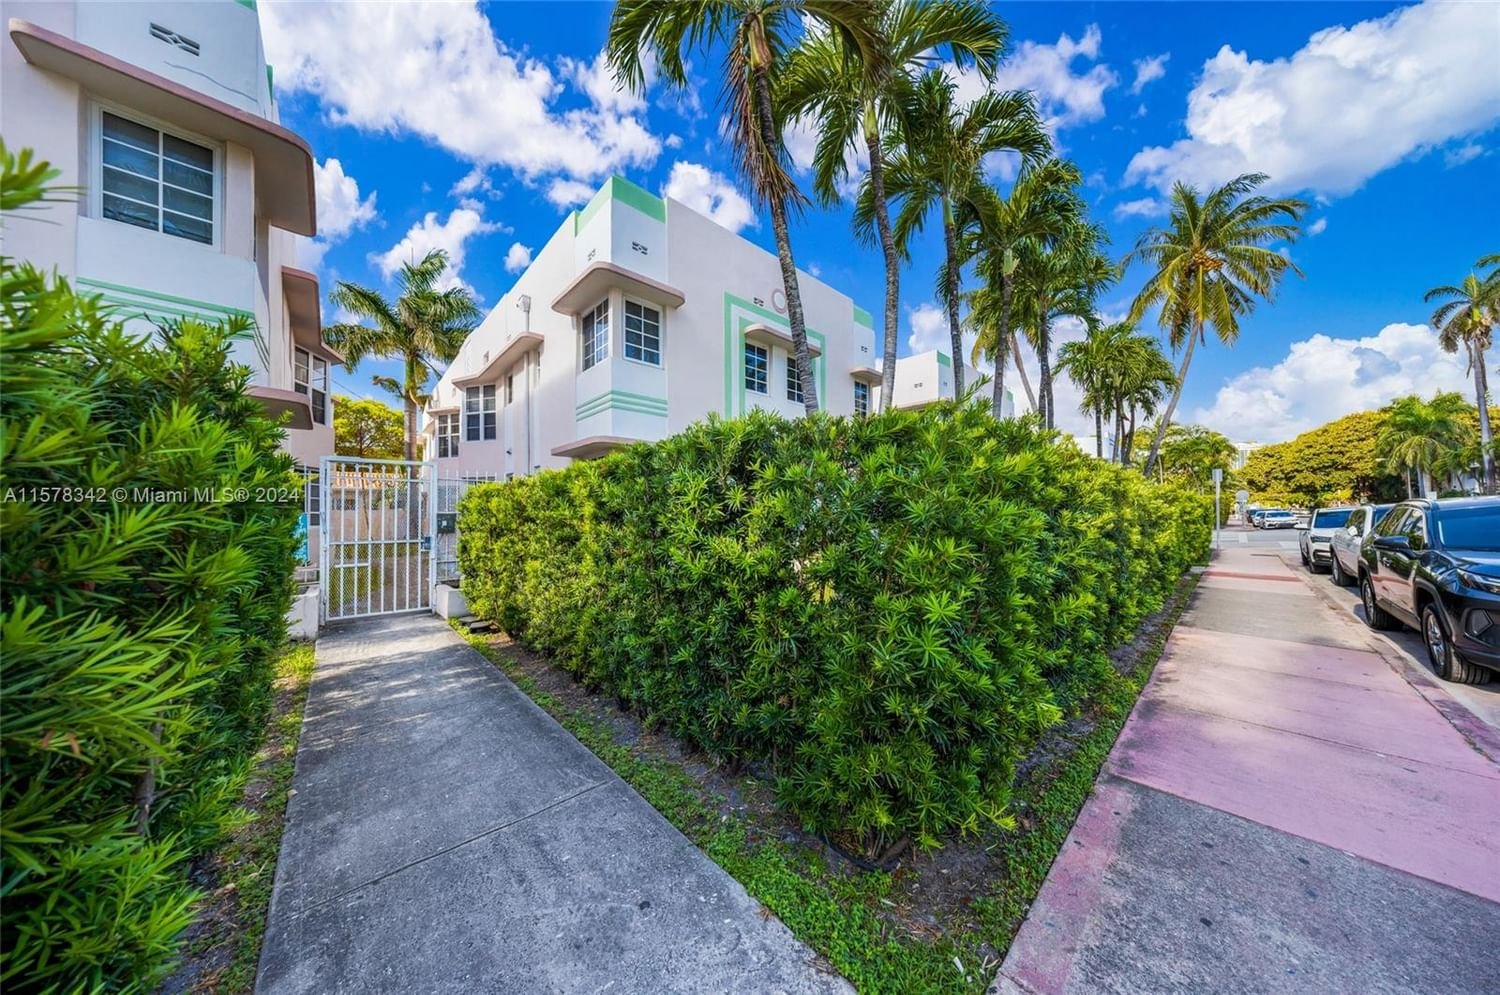 Real estate property located at 540 15th St #102, Miami-Dade County, THE CHELSEA CONDO, Miami Beach, FL